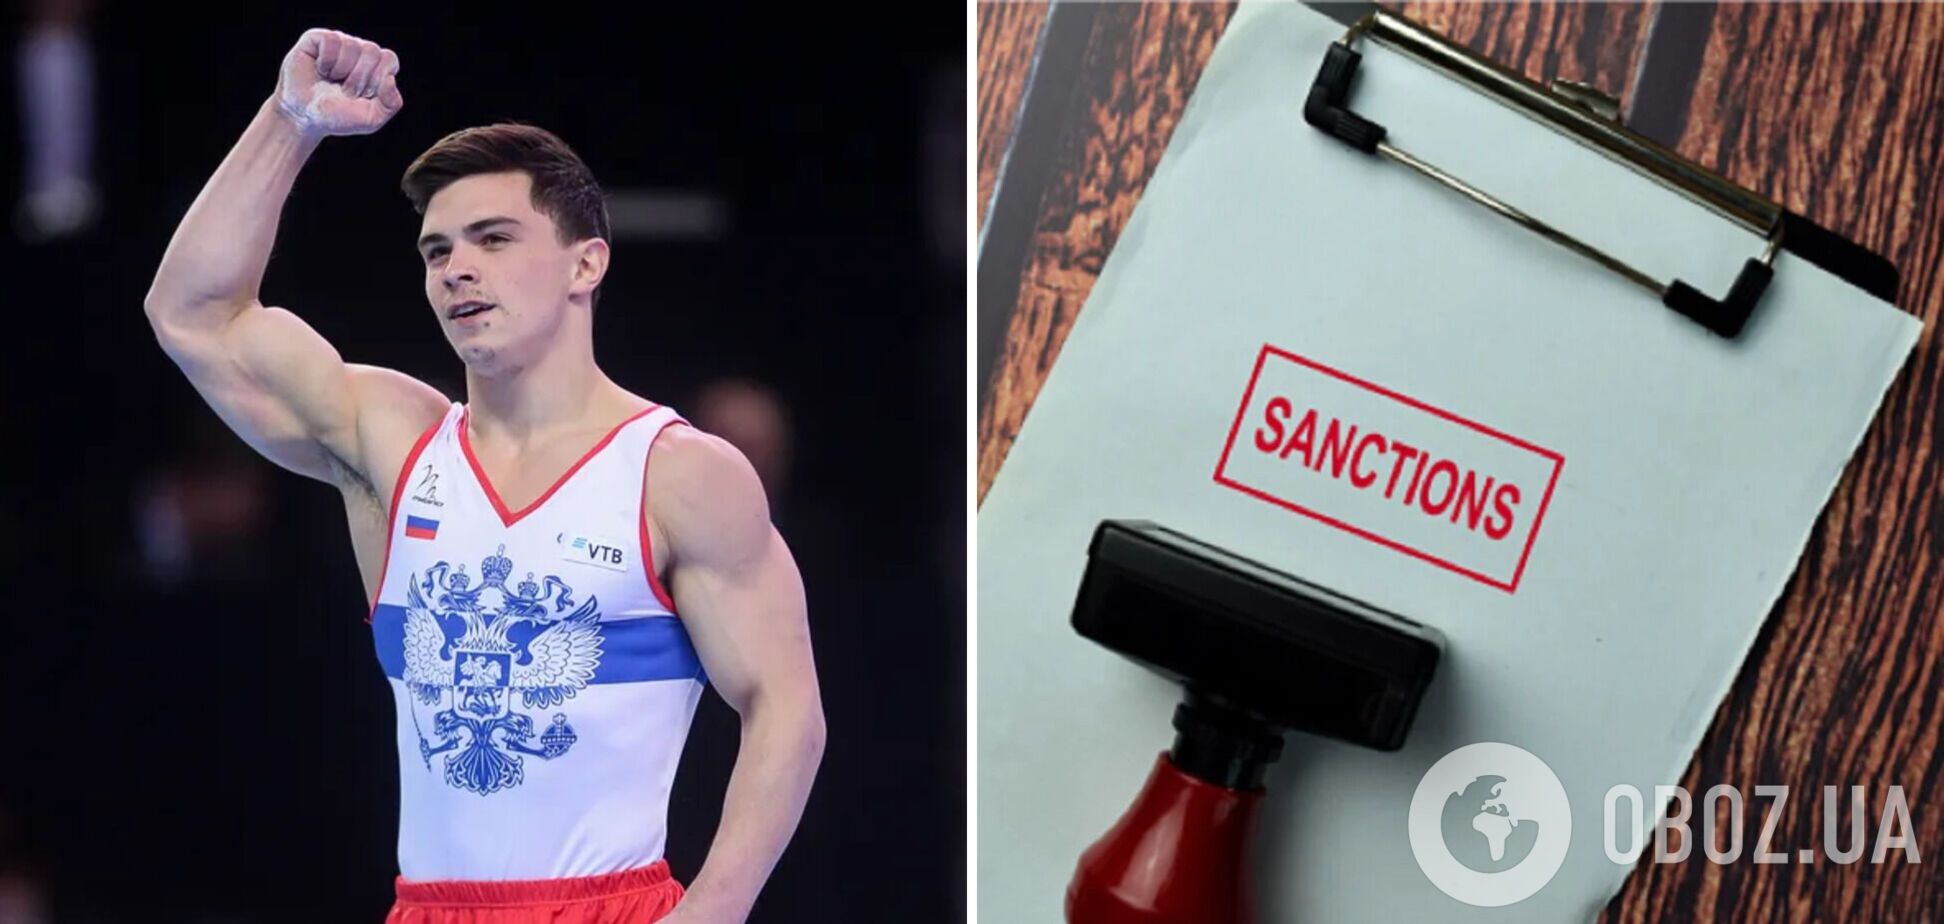 'Находятся в стрессе': чемпион ОИ из РФ пожаловался на санкции против российских спортсменов